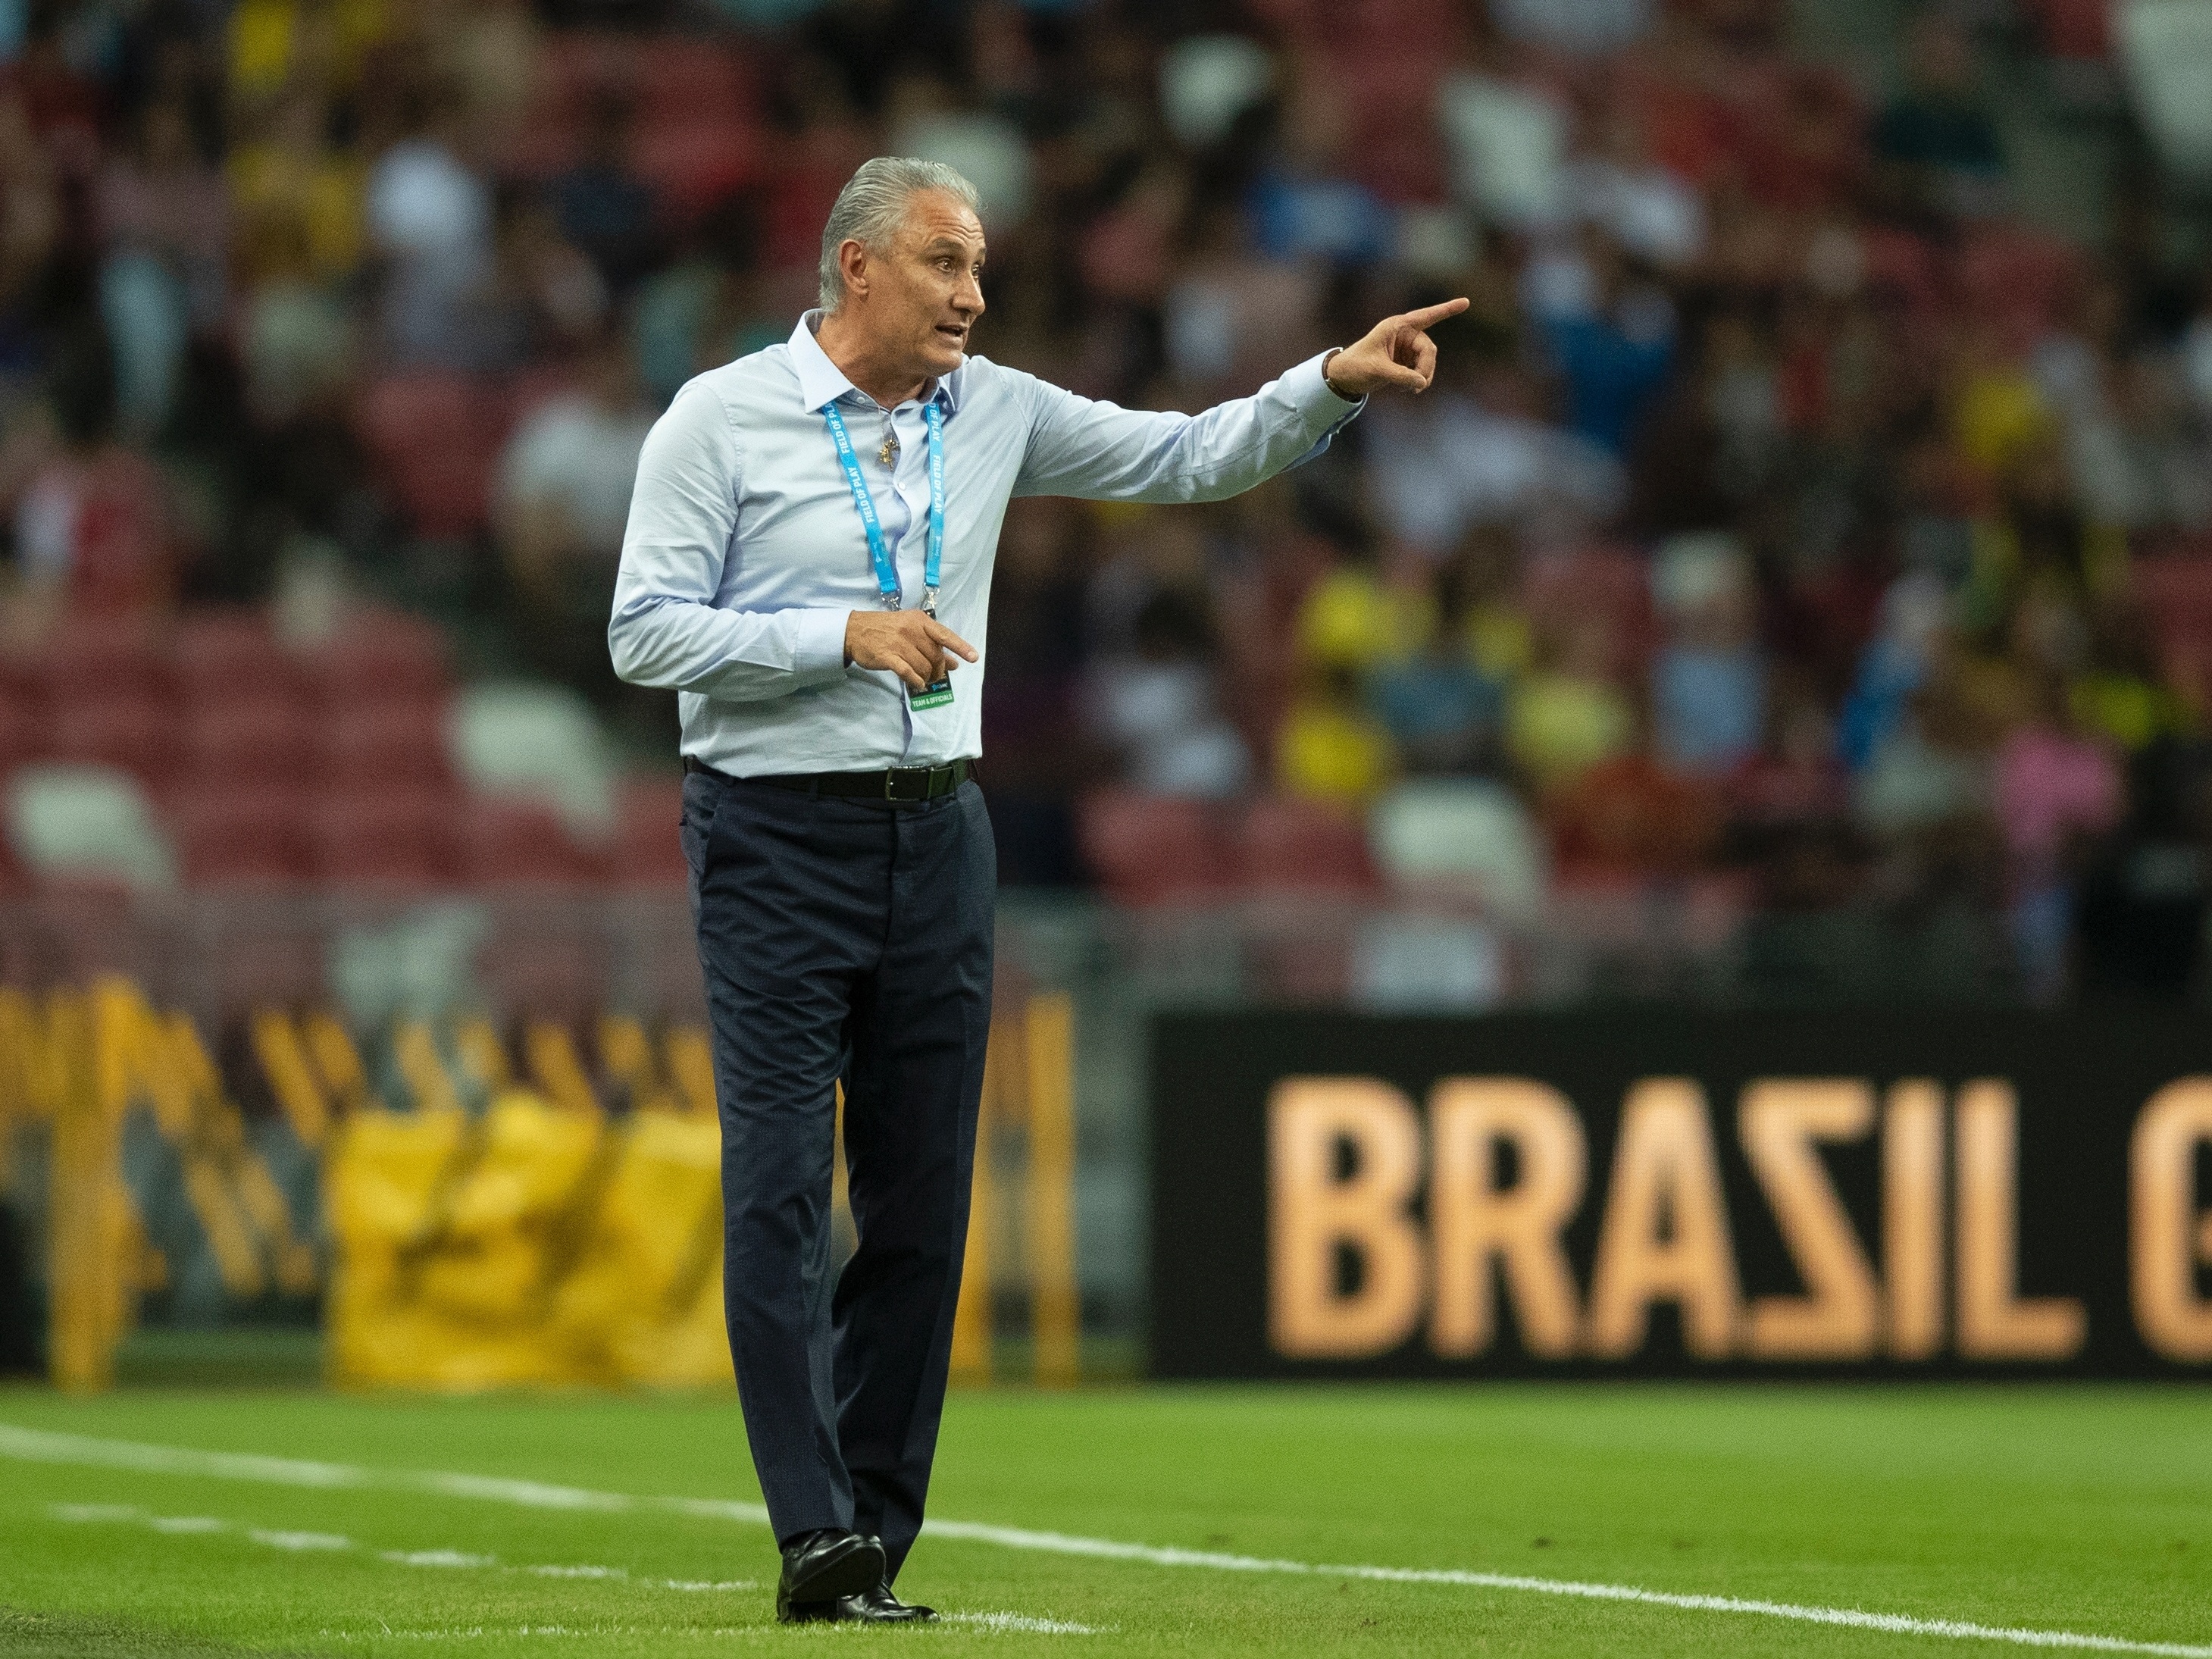 Uruguai decepciona, e América do Sul tem começo ruim na Copa do Qatar -  24/11/2022 - UOL Esporte